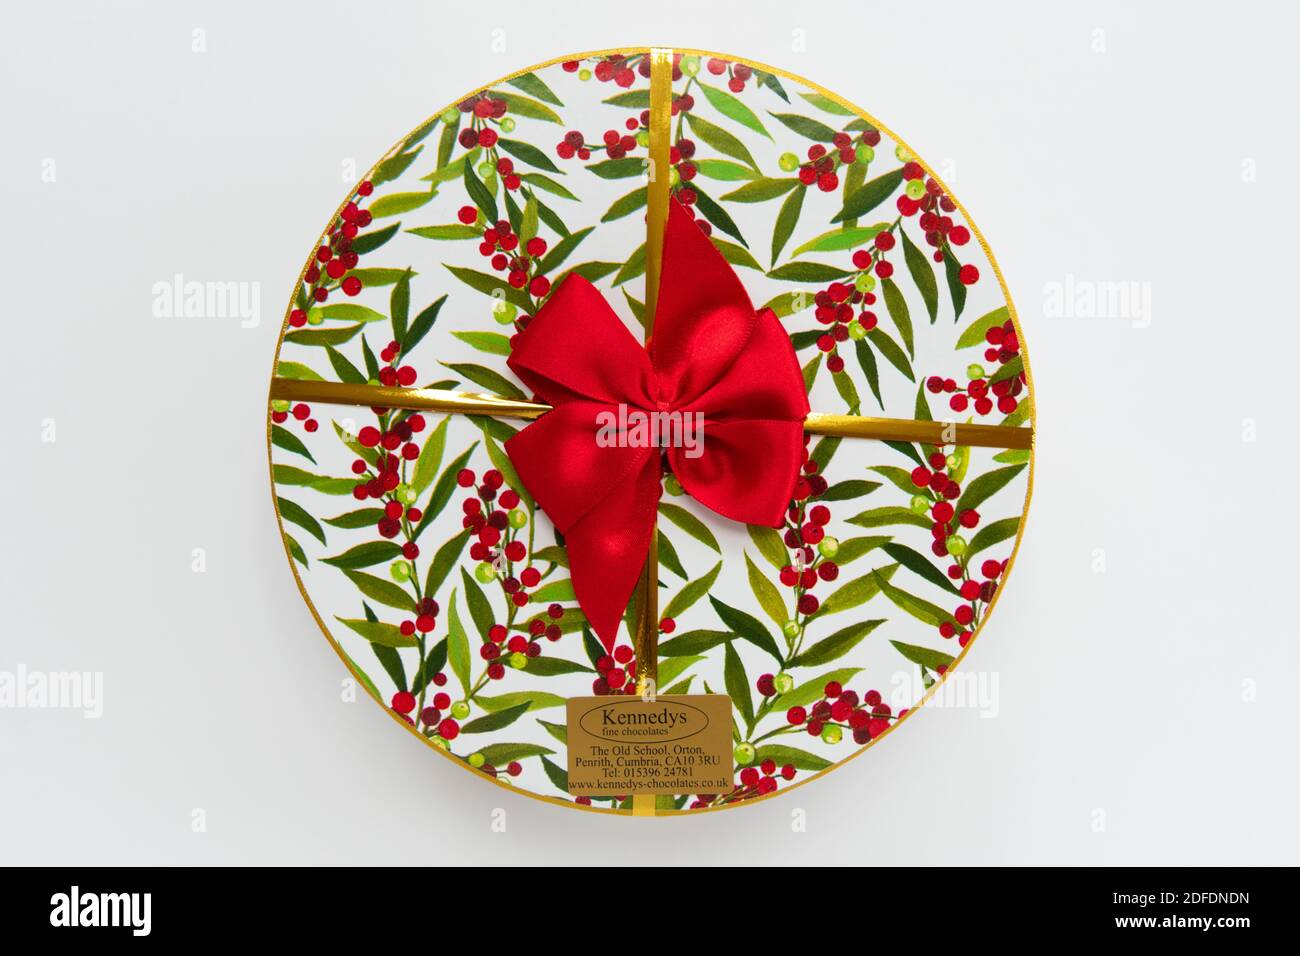 Kennedy's fine chocolates - selección de chocolate en la Navidad redonda decorativa caja con cinta roja Foto de stock